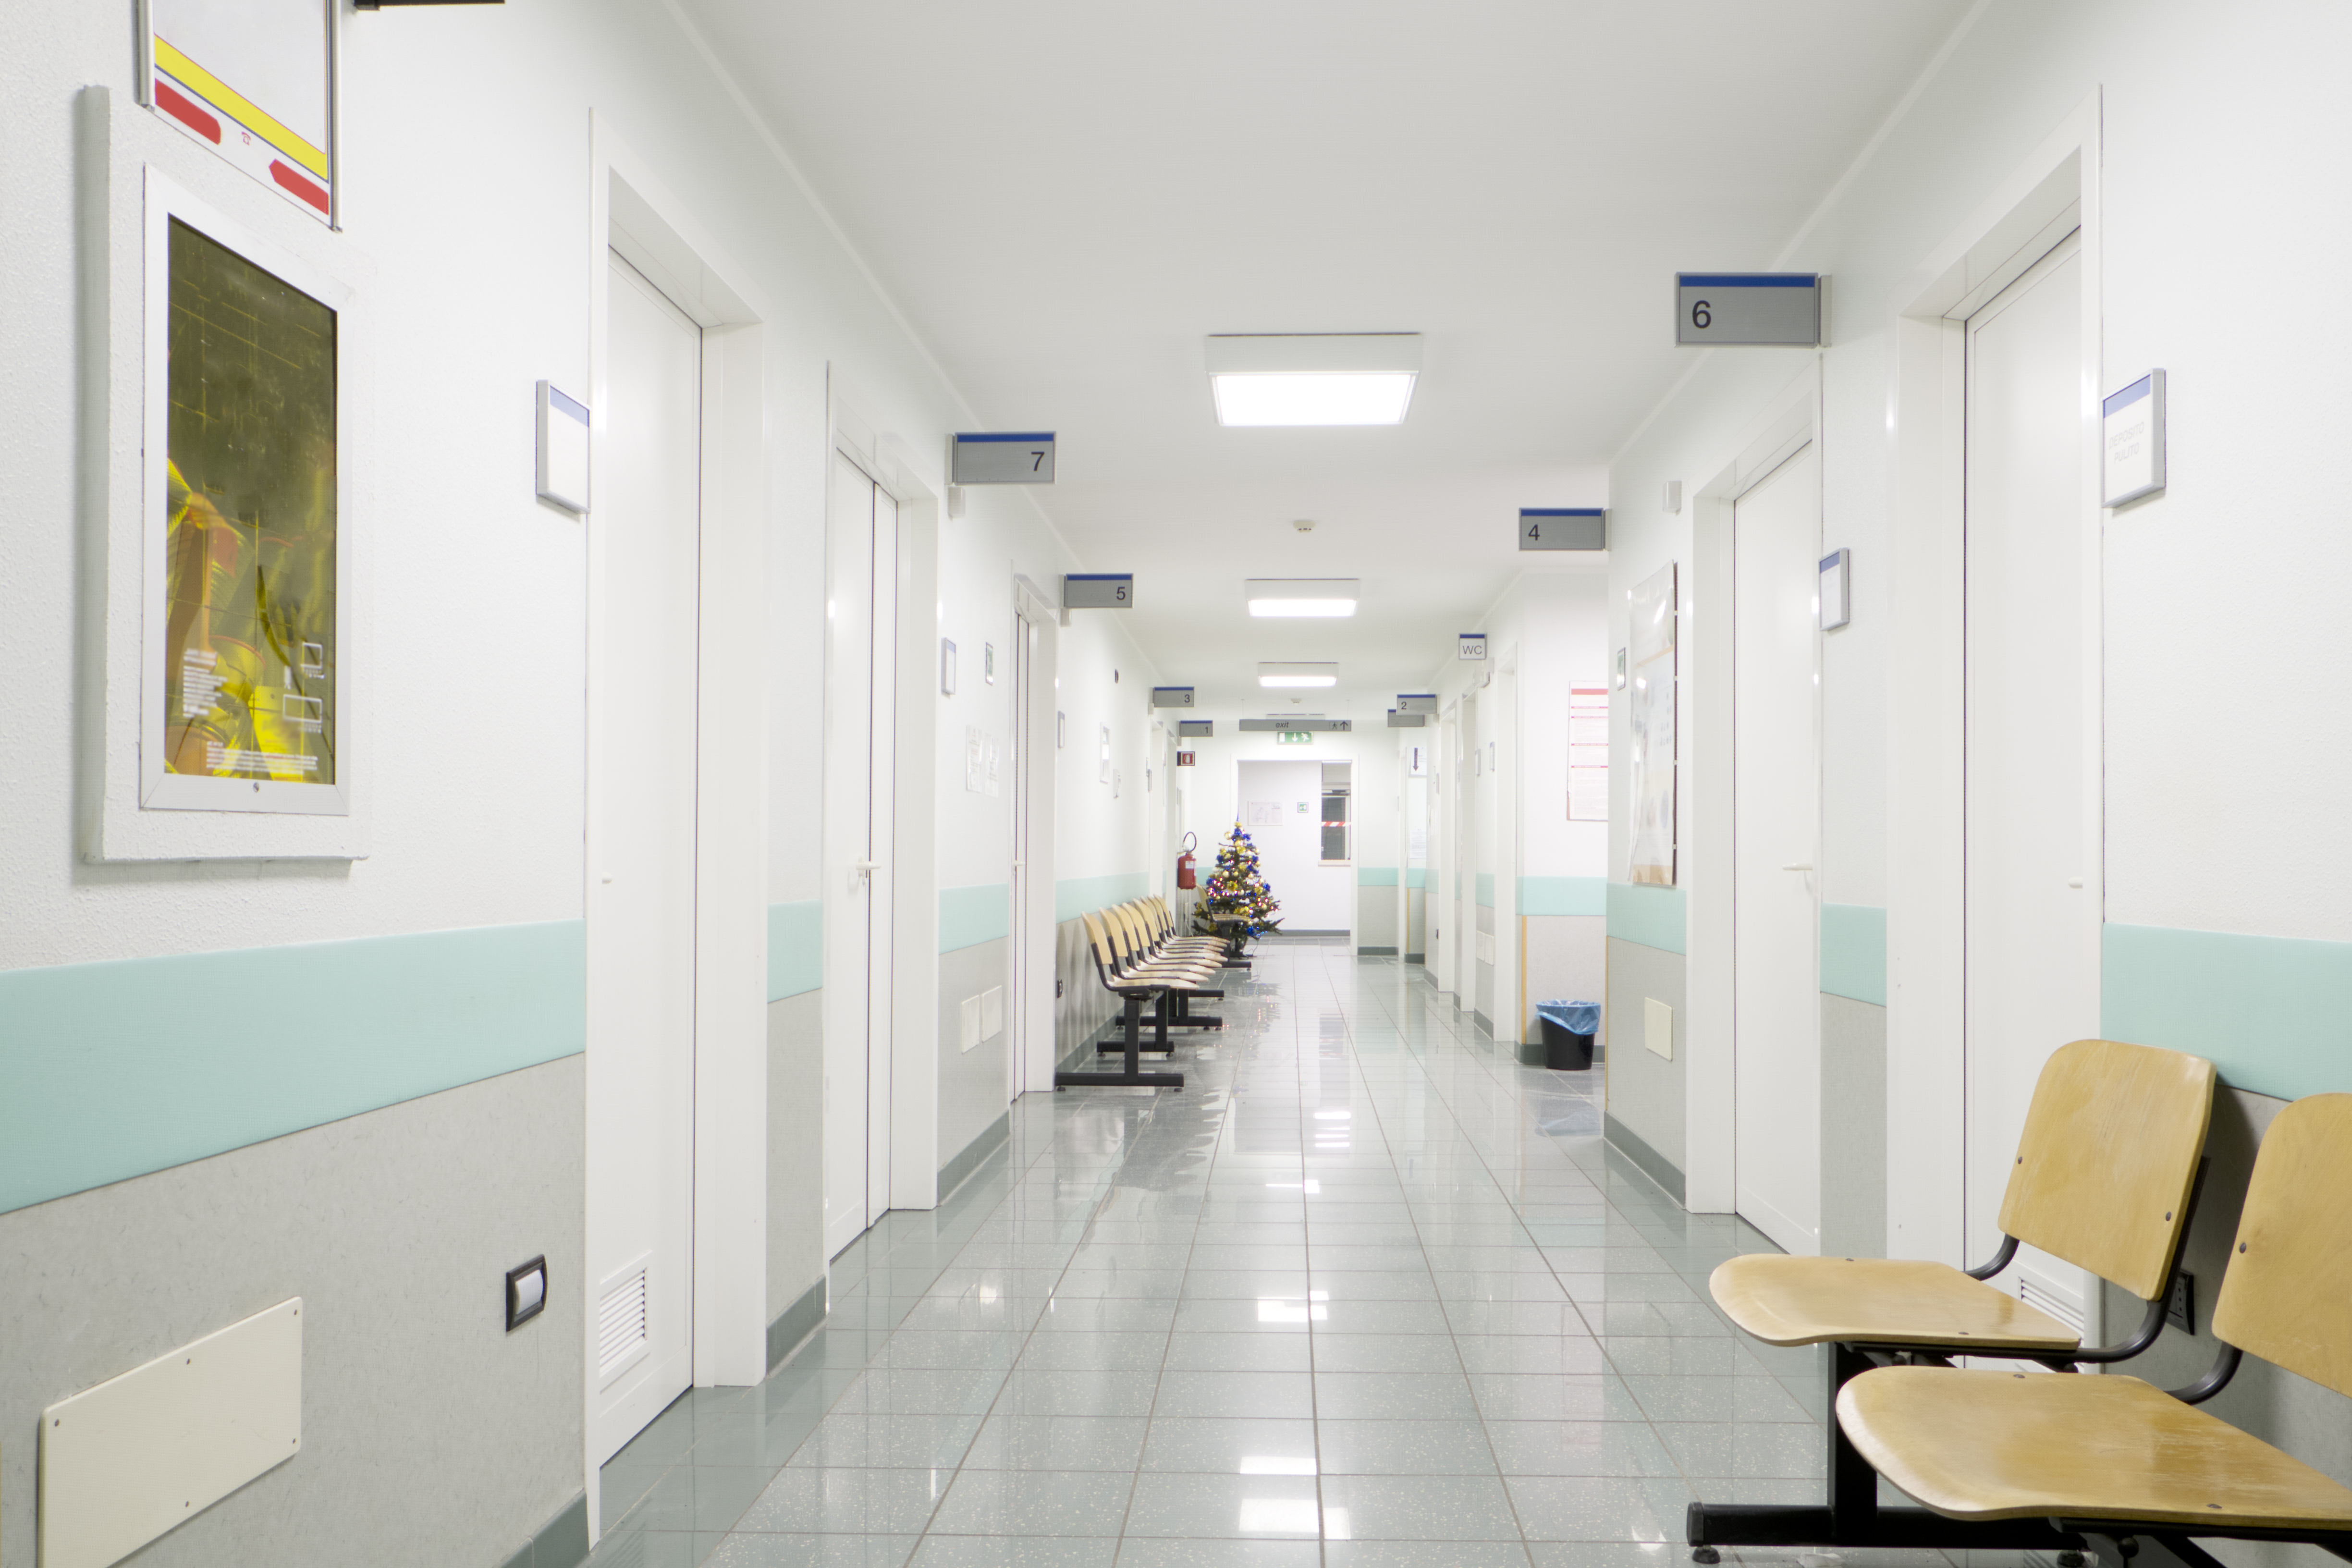 Hospital indoor | Source: Shutterstock